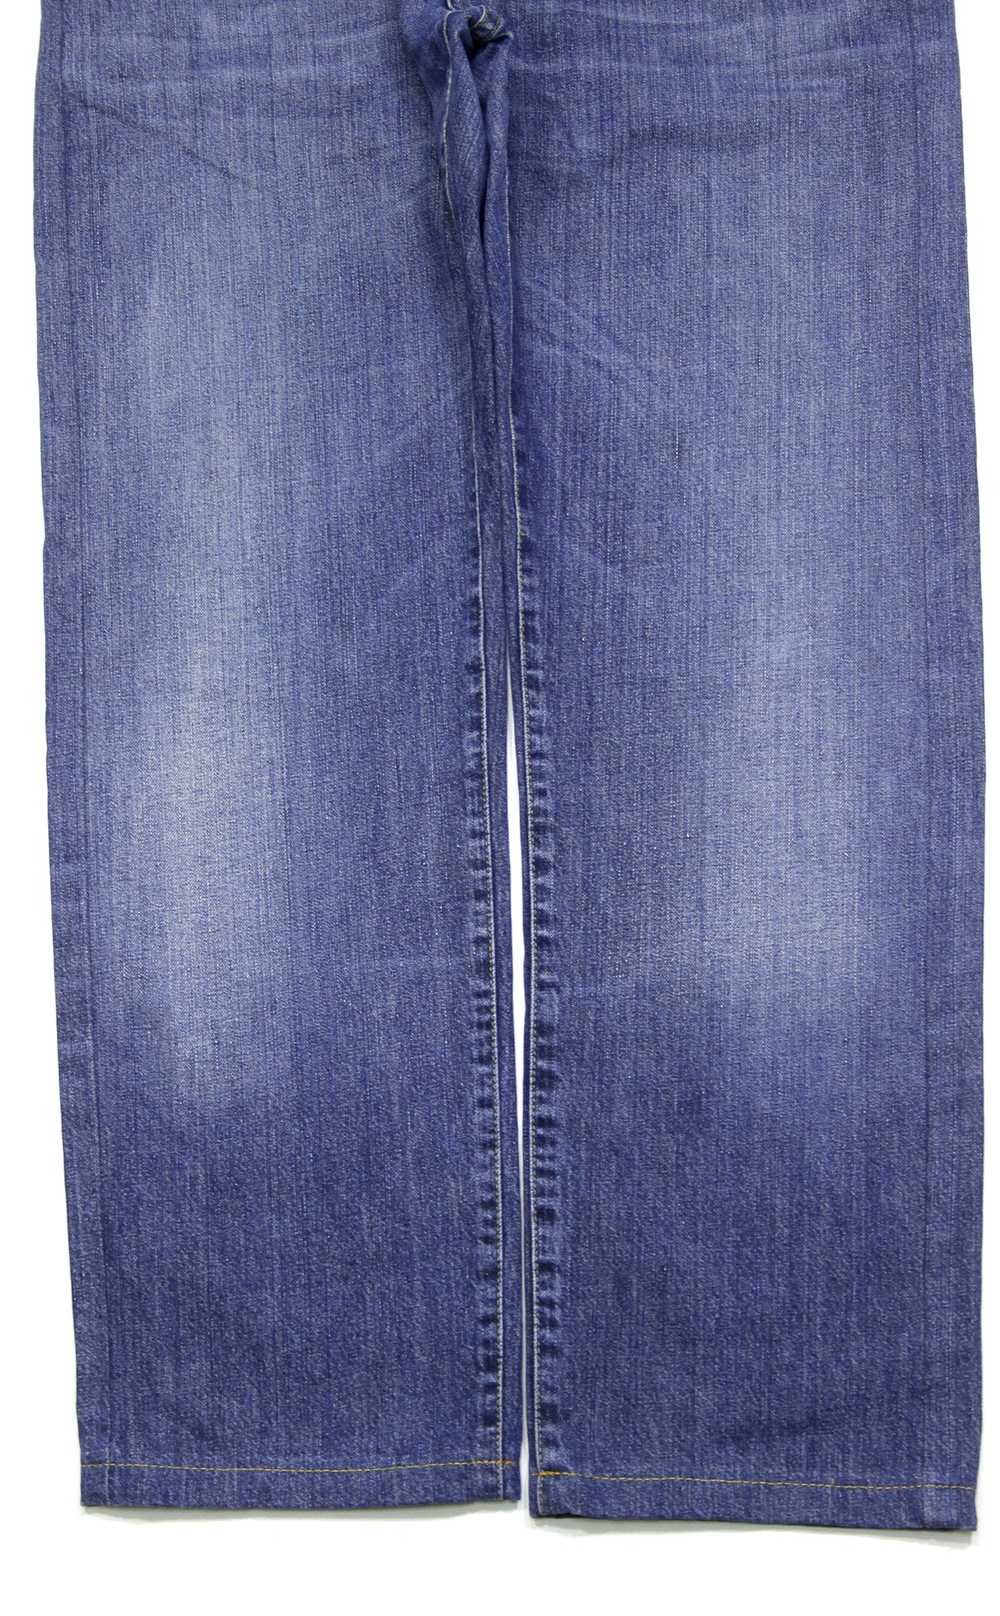 Gucci Vintage Web Stripes Sanded Jeans - image 5